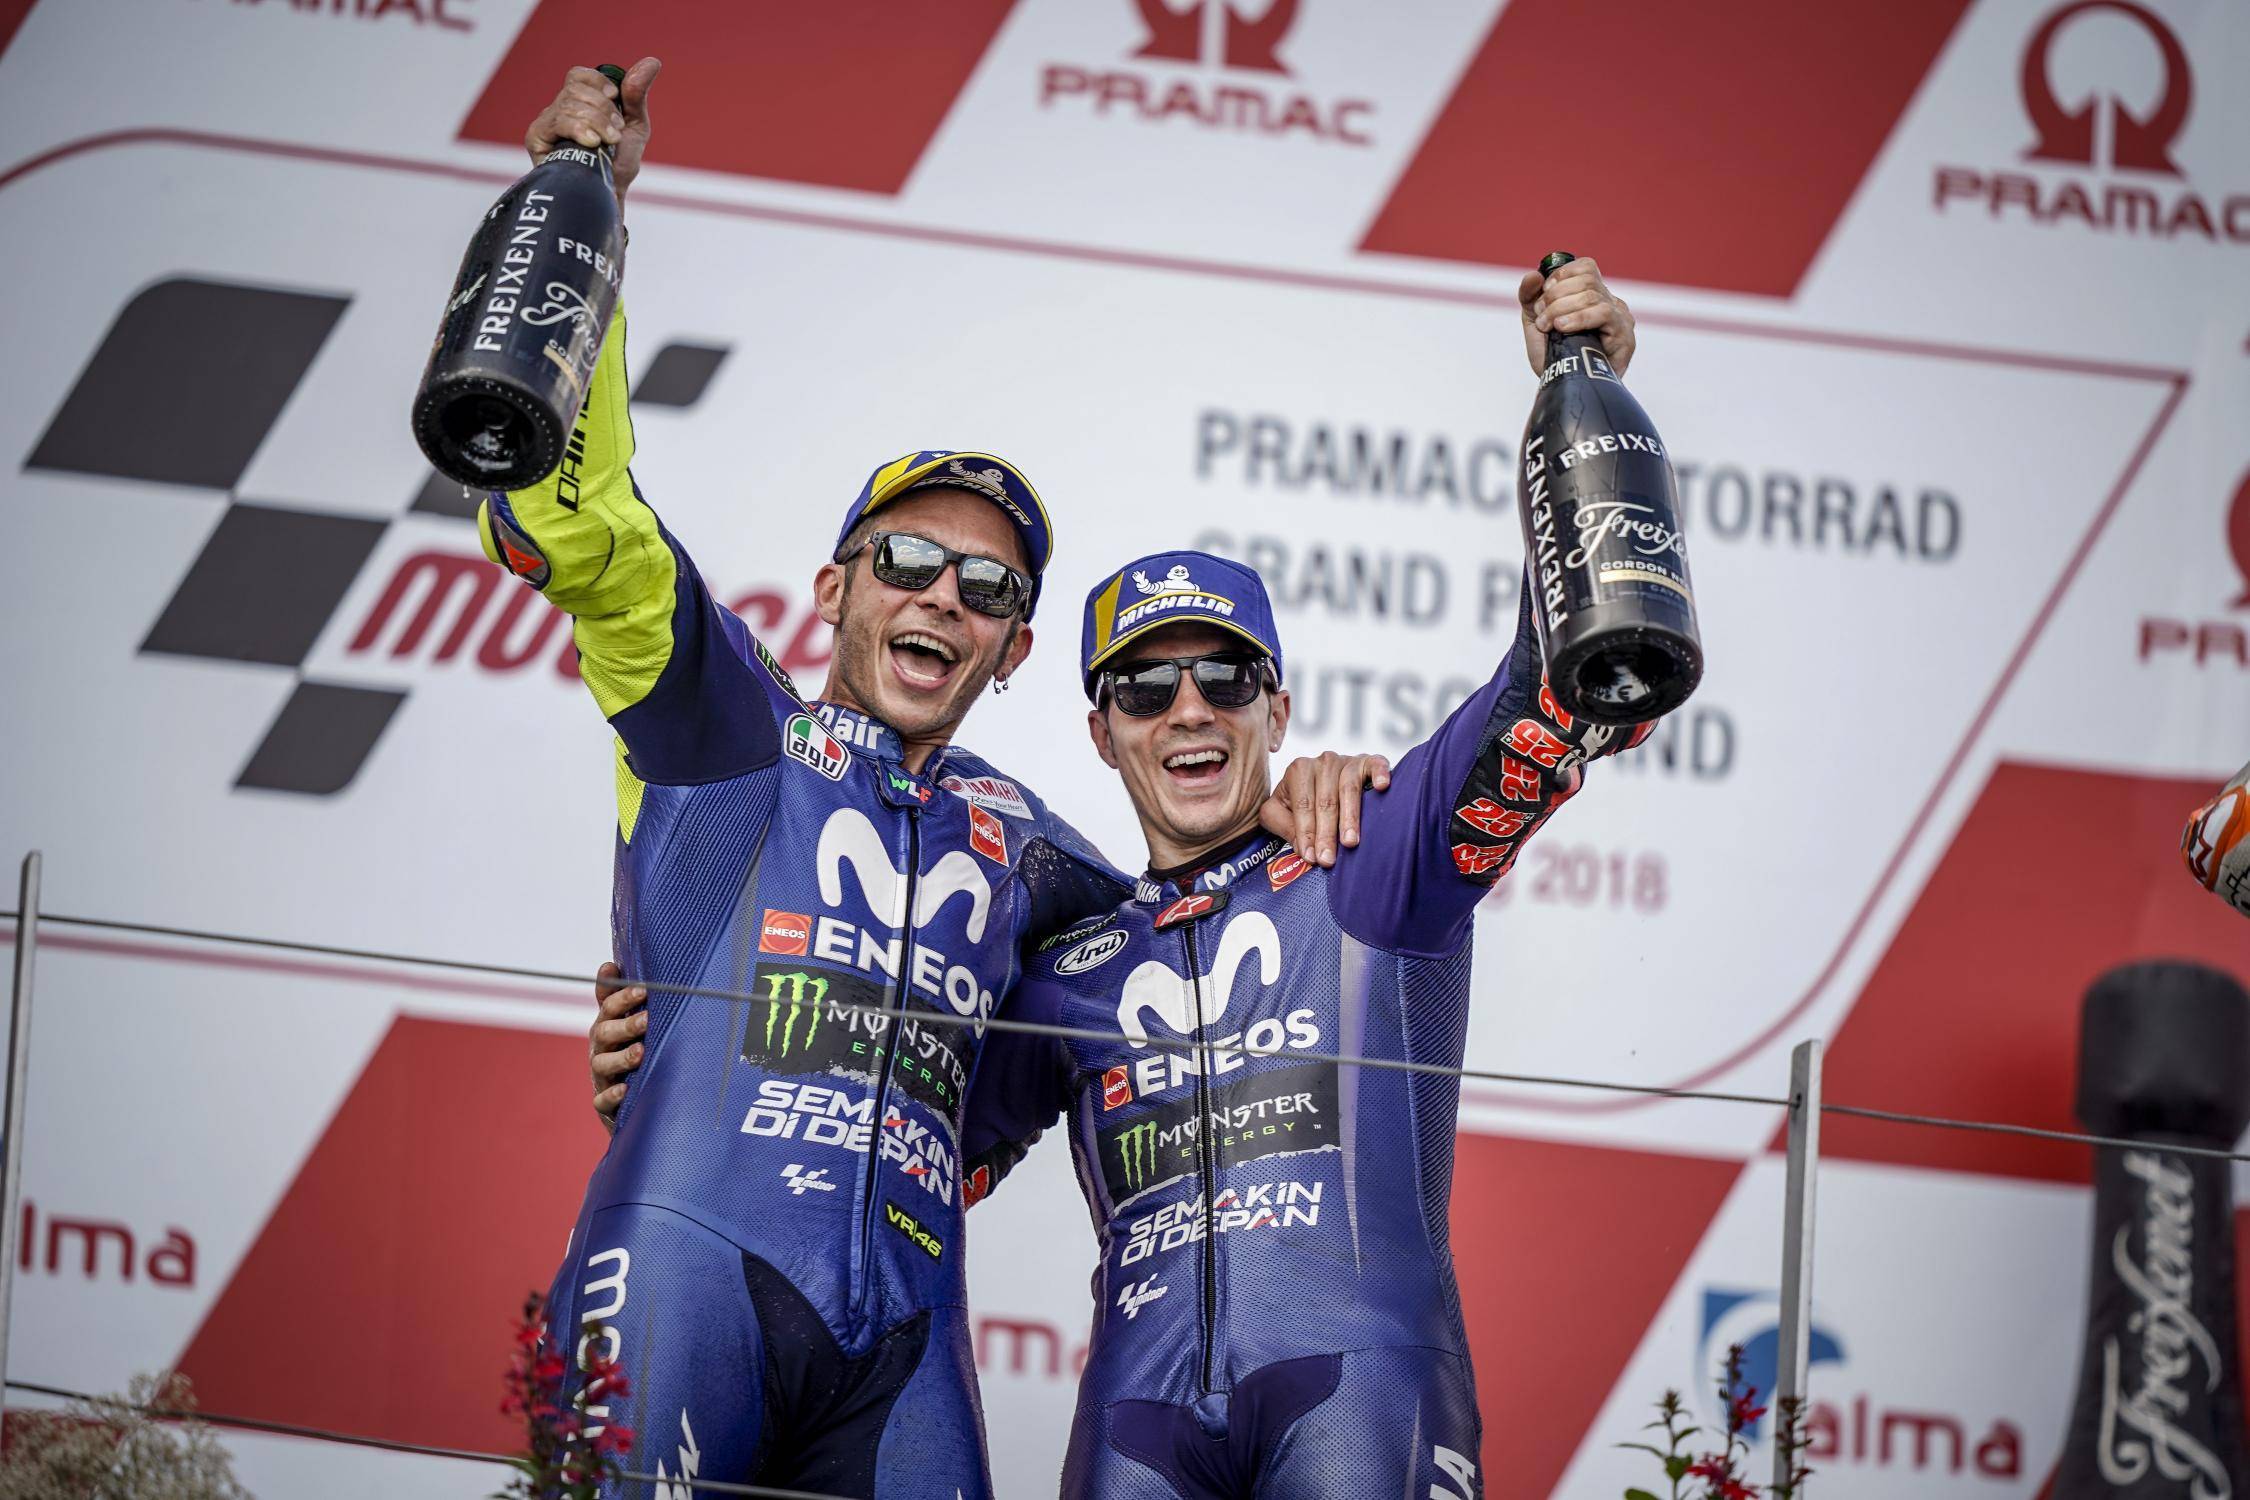 Pagelle MotoGP 2018: il secondo e terzo posto della coppia Yamaha al Sachsenring